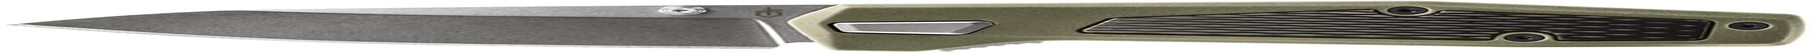 Gerber Gear Fuse Pocket Knife, 3.3 Inch Plane Edge Blade, Sage